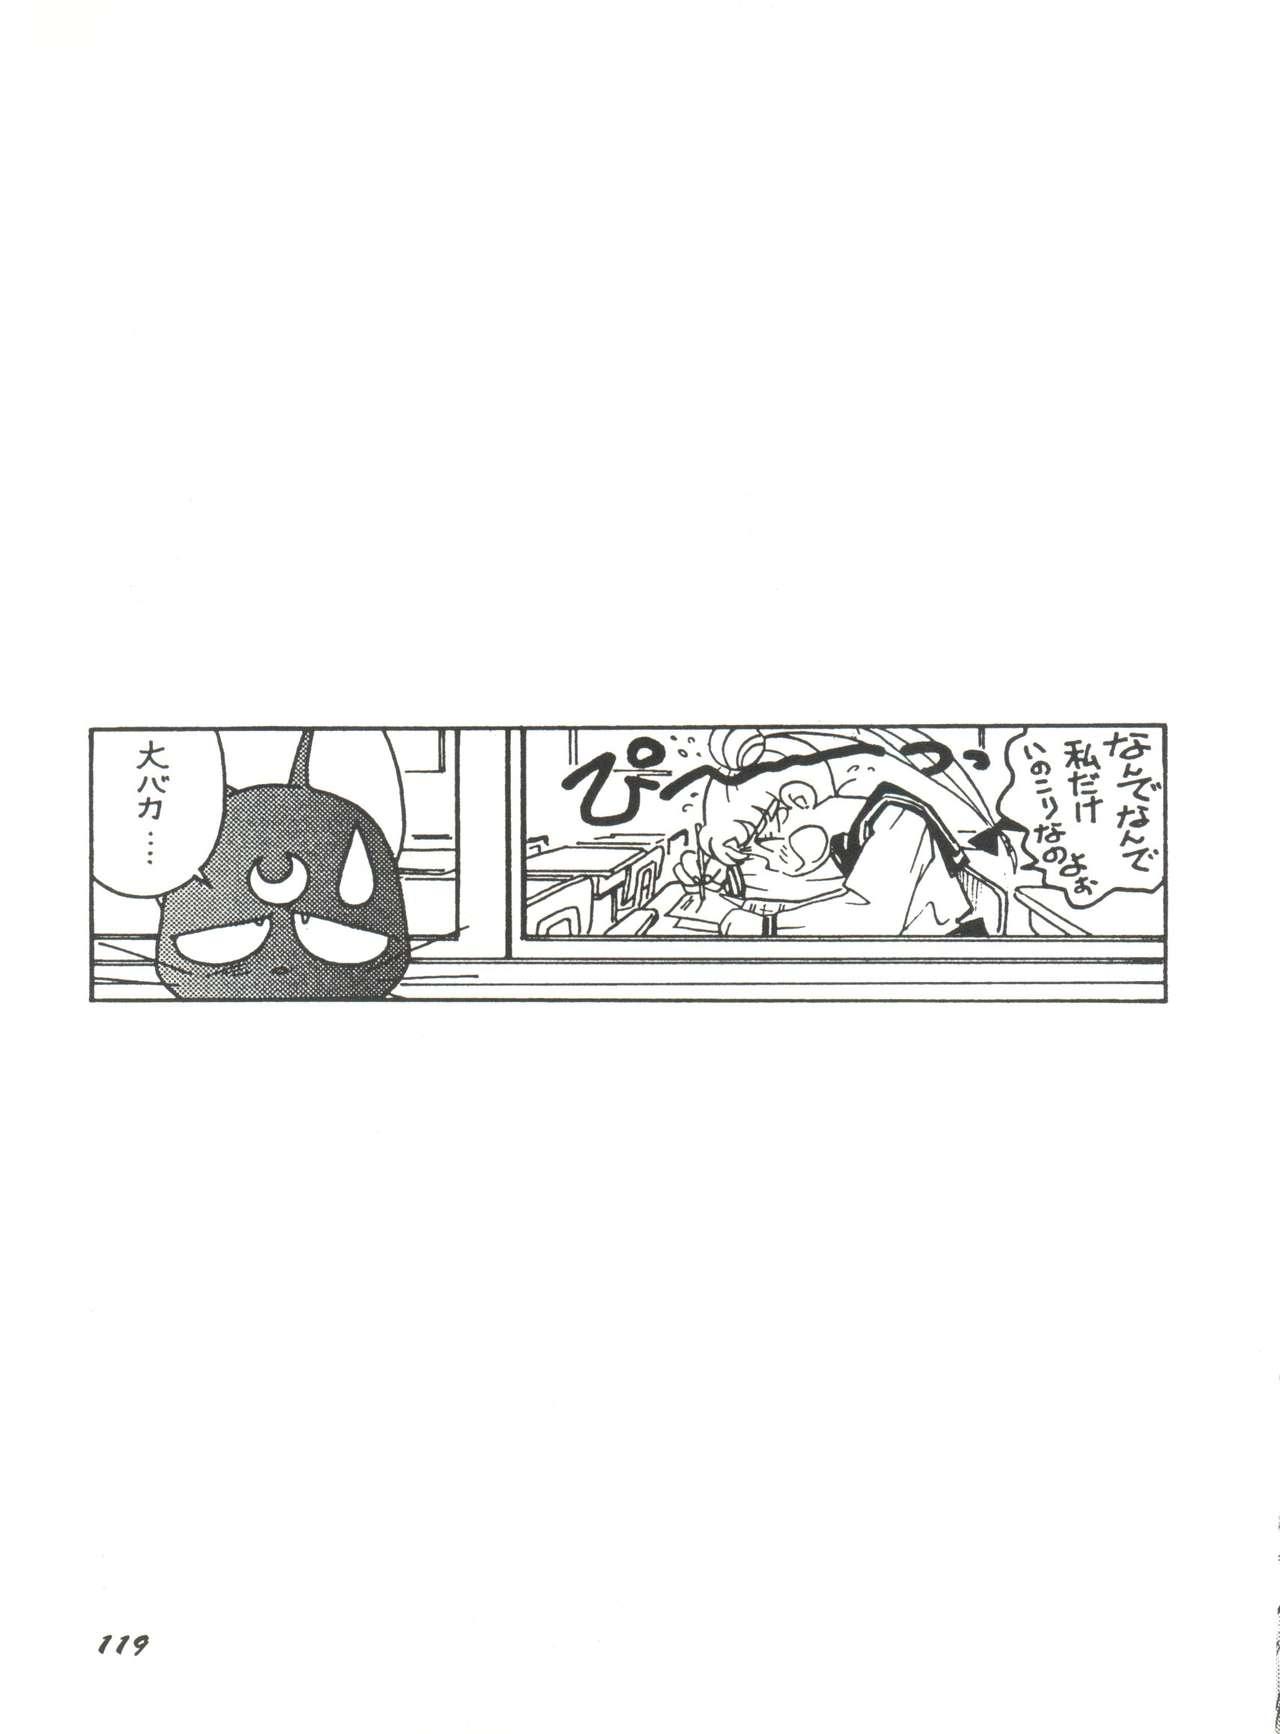 Bishoujo Doujinshi Anthology 15 - Moon Paradise 9 Tsuki no Rakuen 120